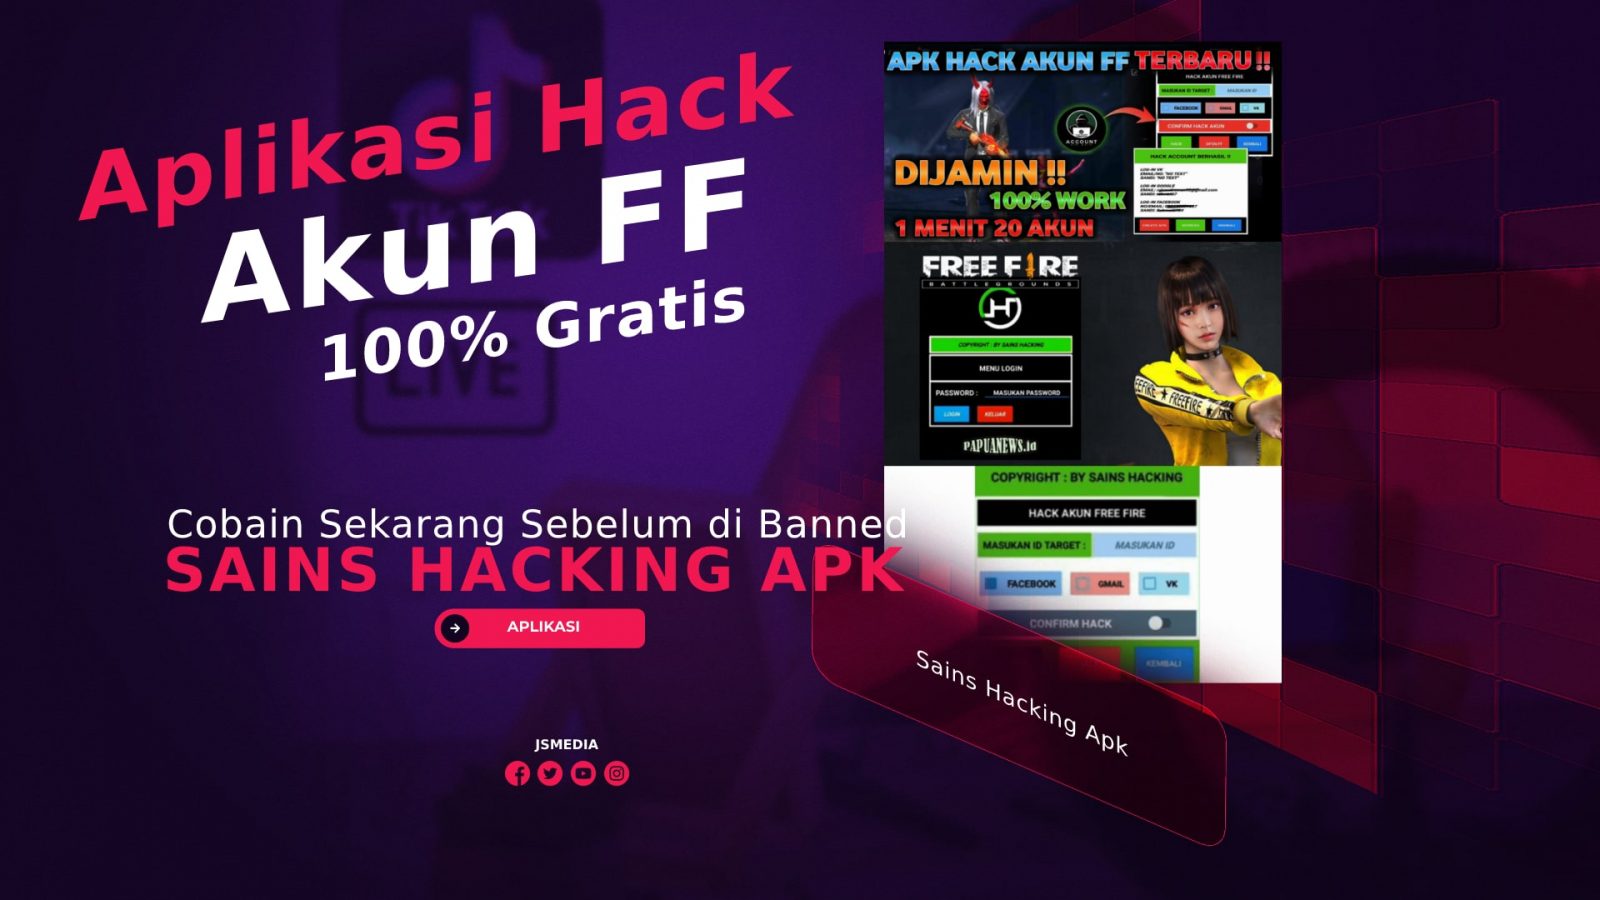 Sains Hacking Apk: Aplikasi Hack FF Terbaru 100% Gratis